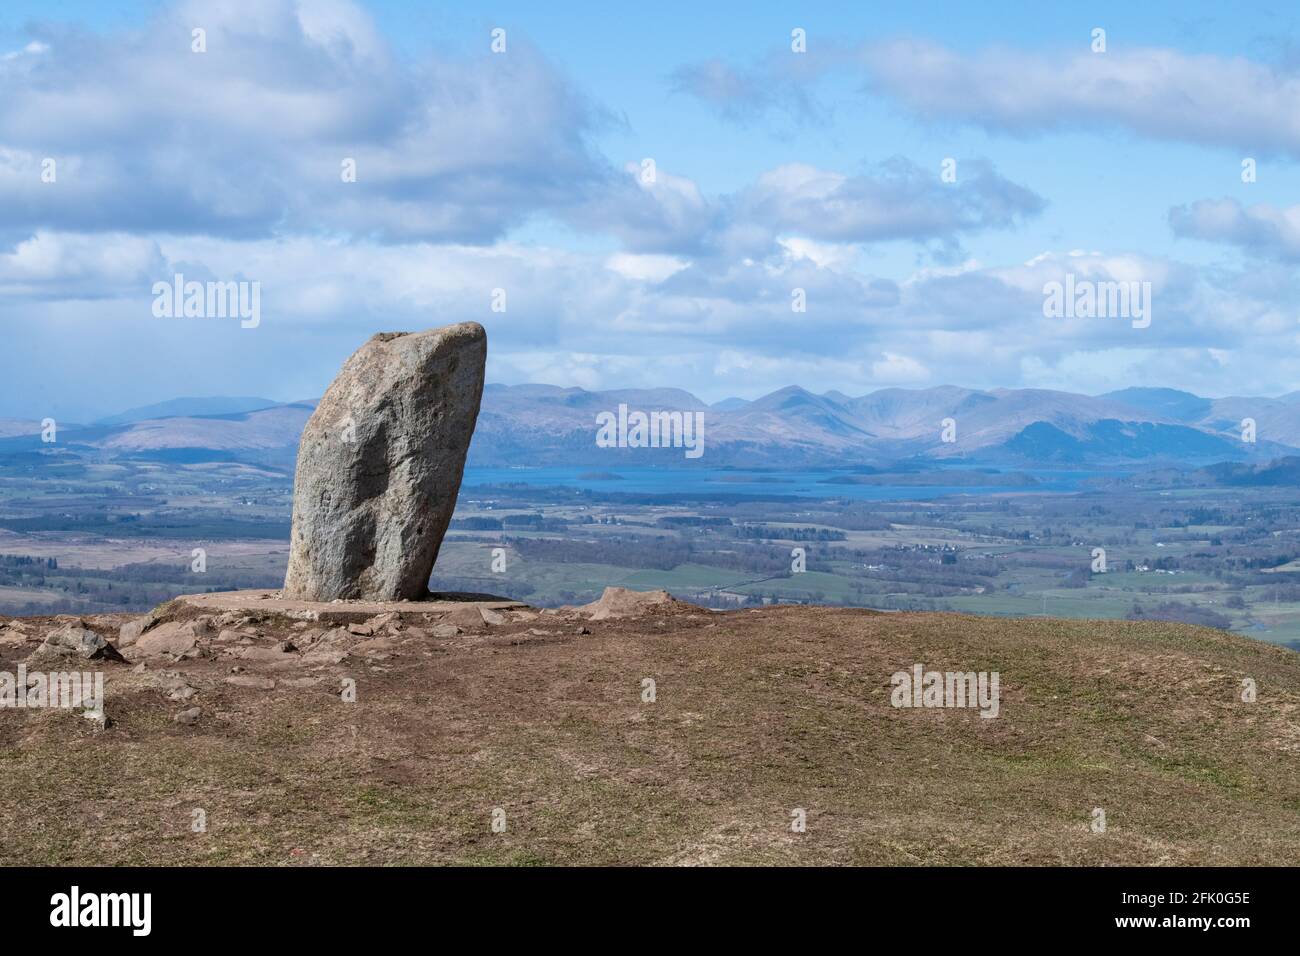 La cima di Dumgoyne è segnata da una pietra che domina Loch Lomond e Loch Lomond e il Trossachs National Park, Stirling, Scozia, Regno Unito Foto Stock